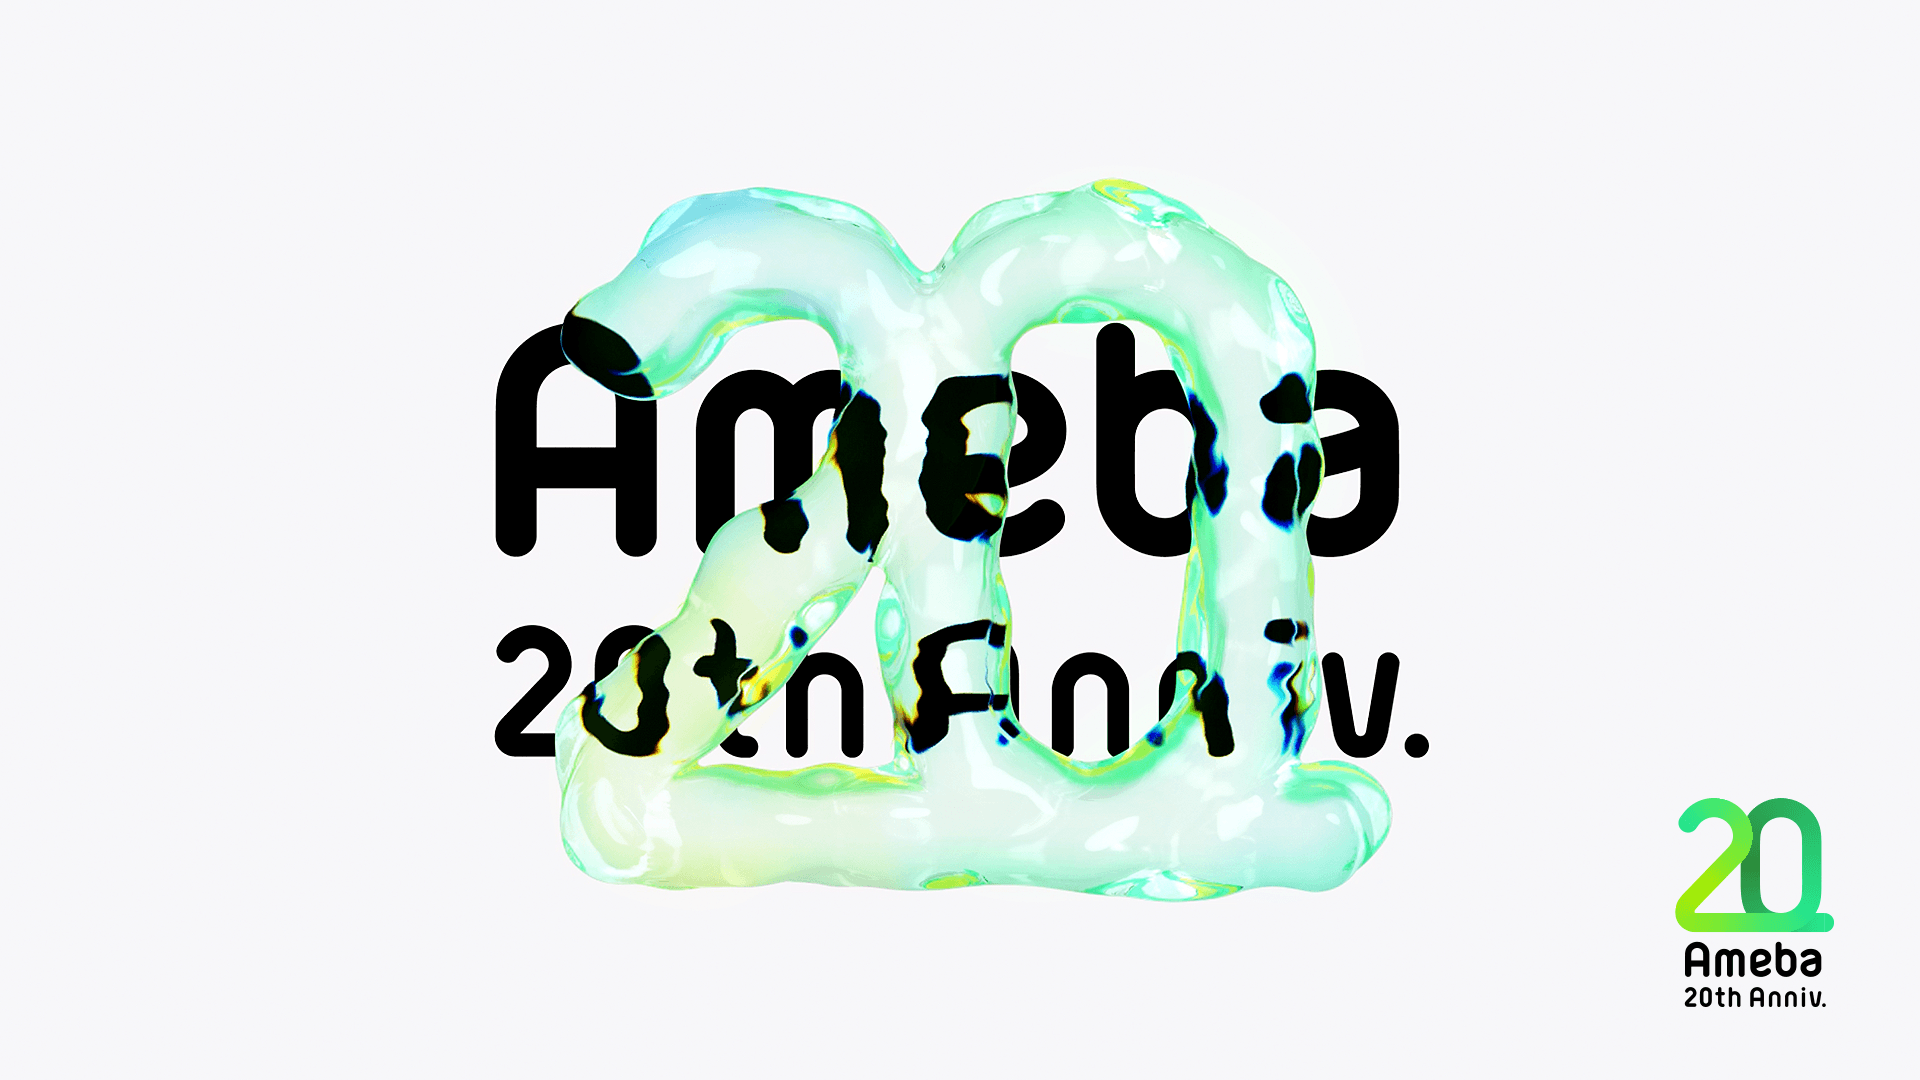 湖中さんがデザインを担当したAmeba20周年記念ロゴのキービジュアル